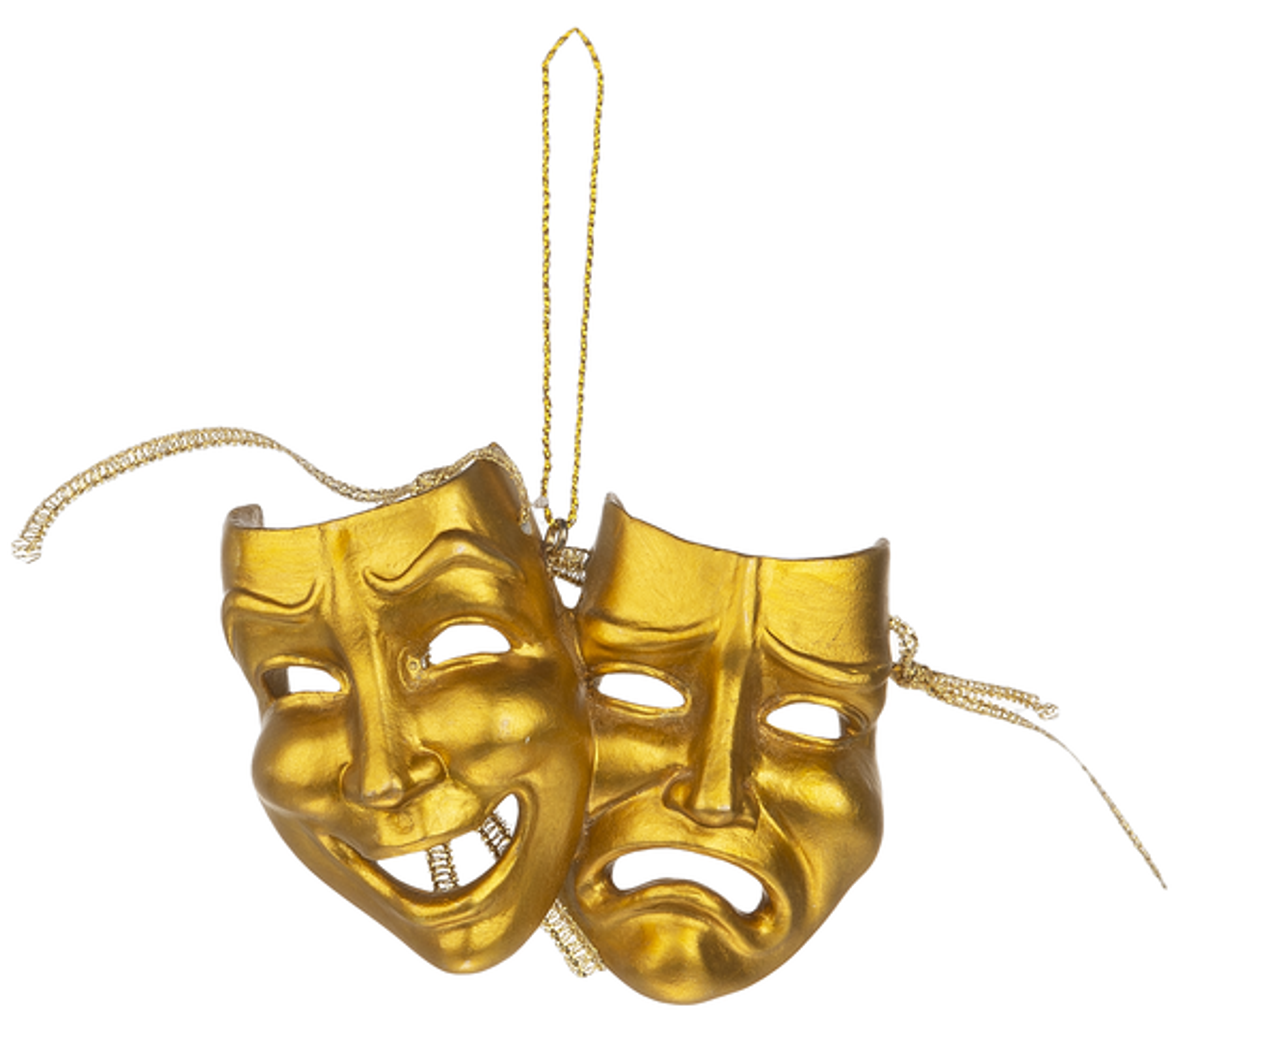 Ornament Theatre Mask